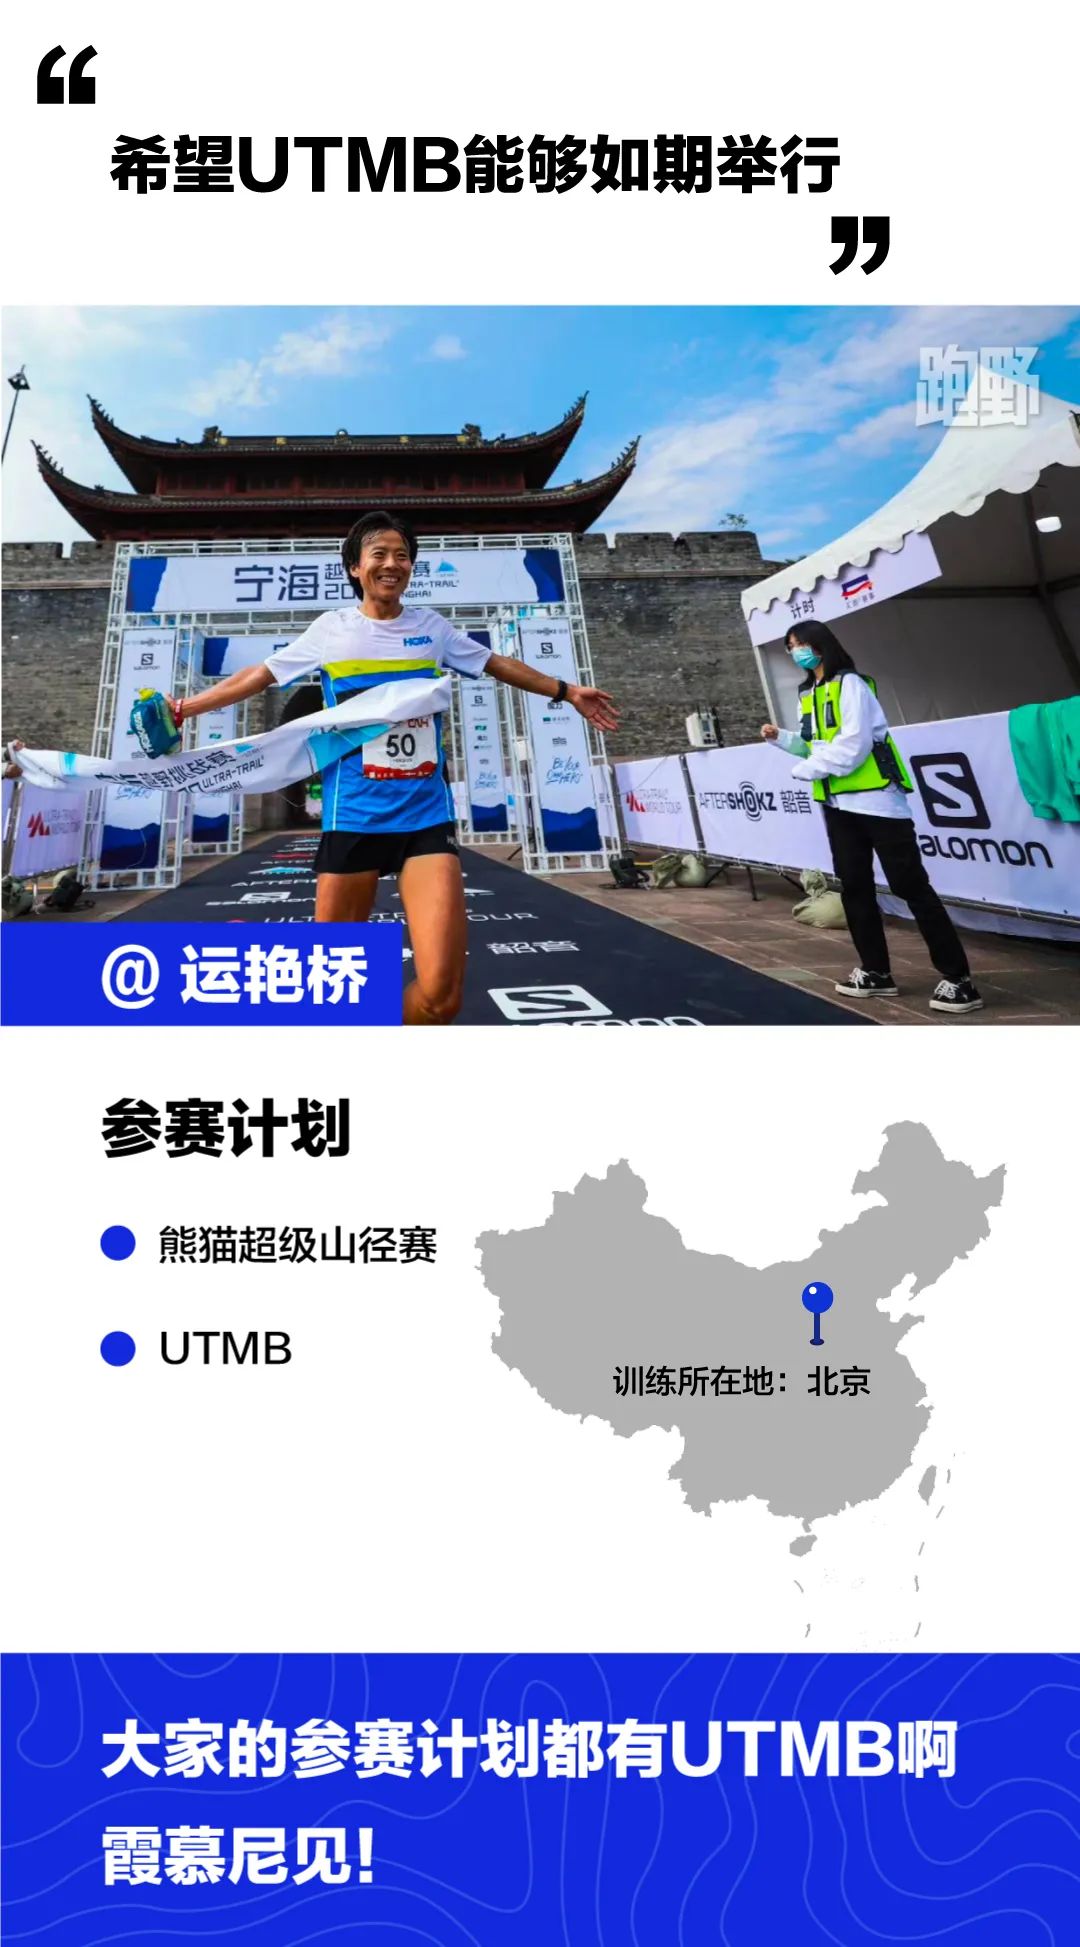 2021年这些中国最强跑者们有什么打算